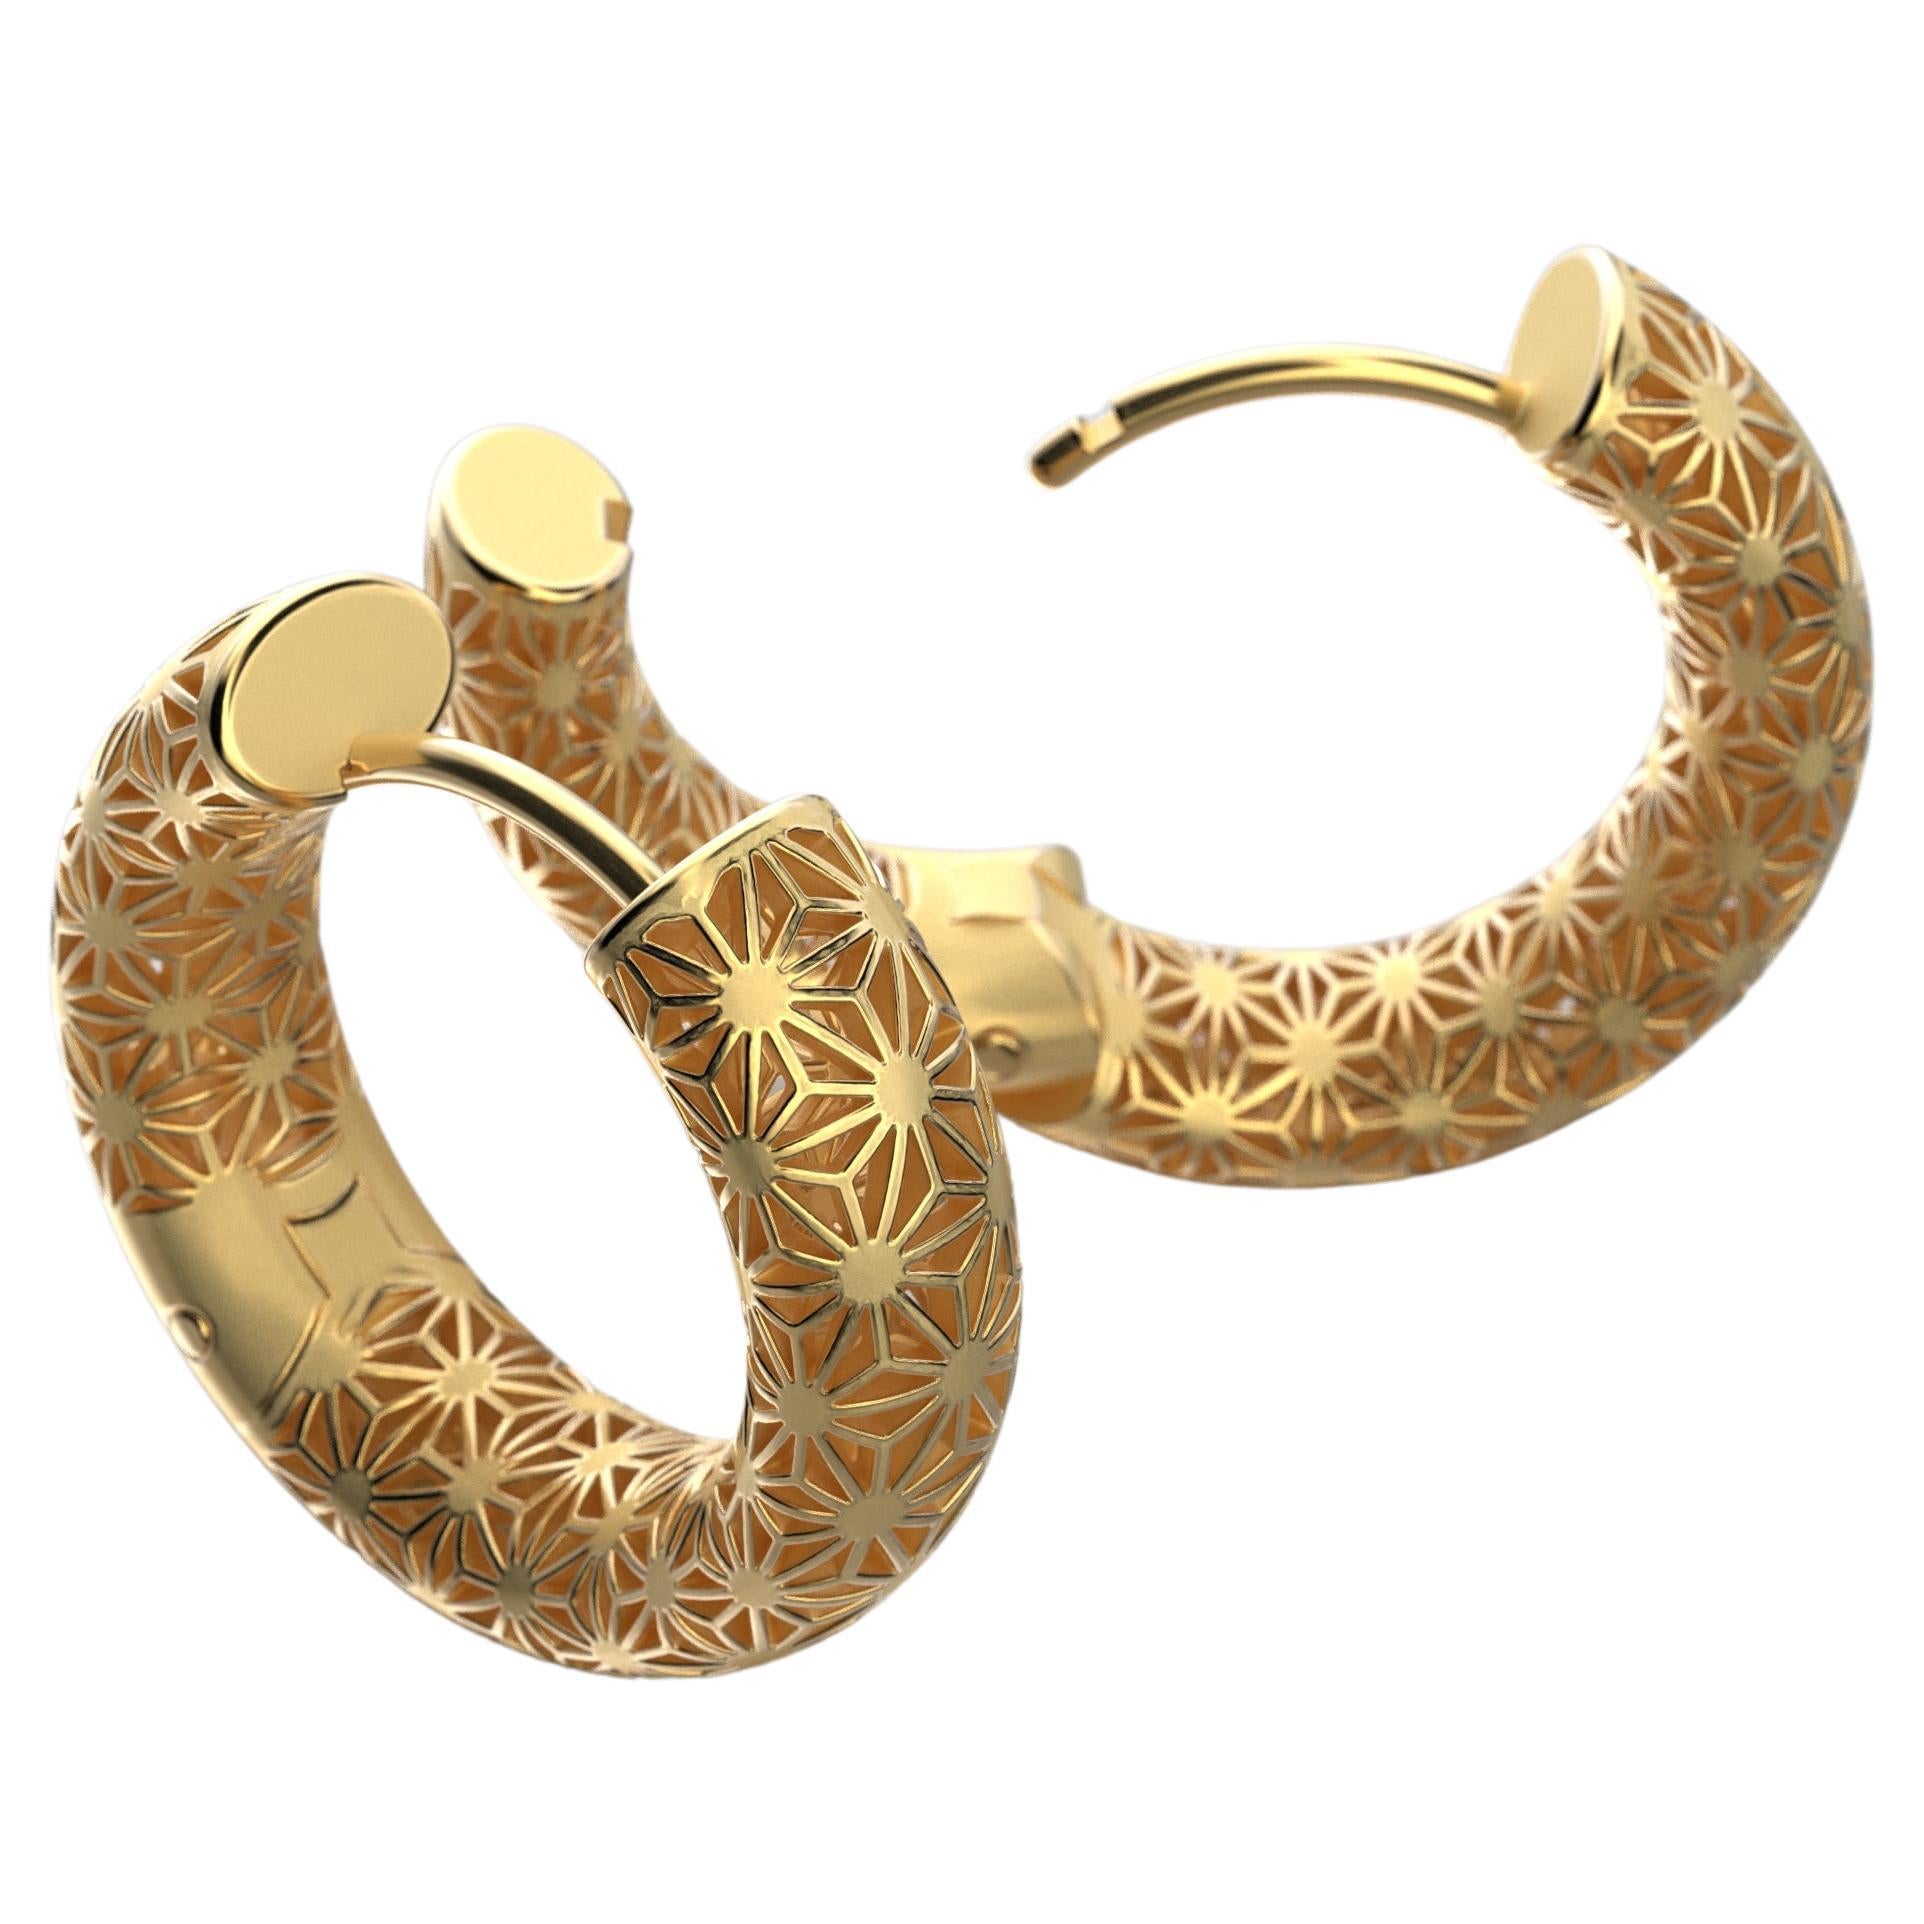  Oltremare Gioielli 14K Italian Gold Hoop Earrings - Sashiko Japanese Pattern  For Sale